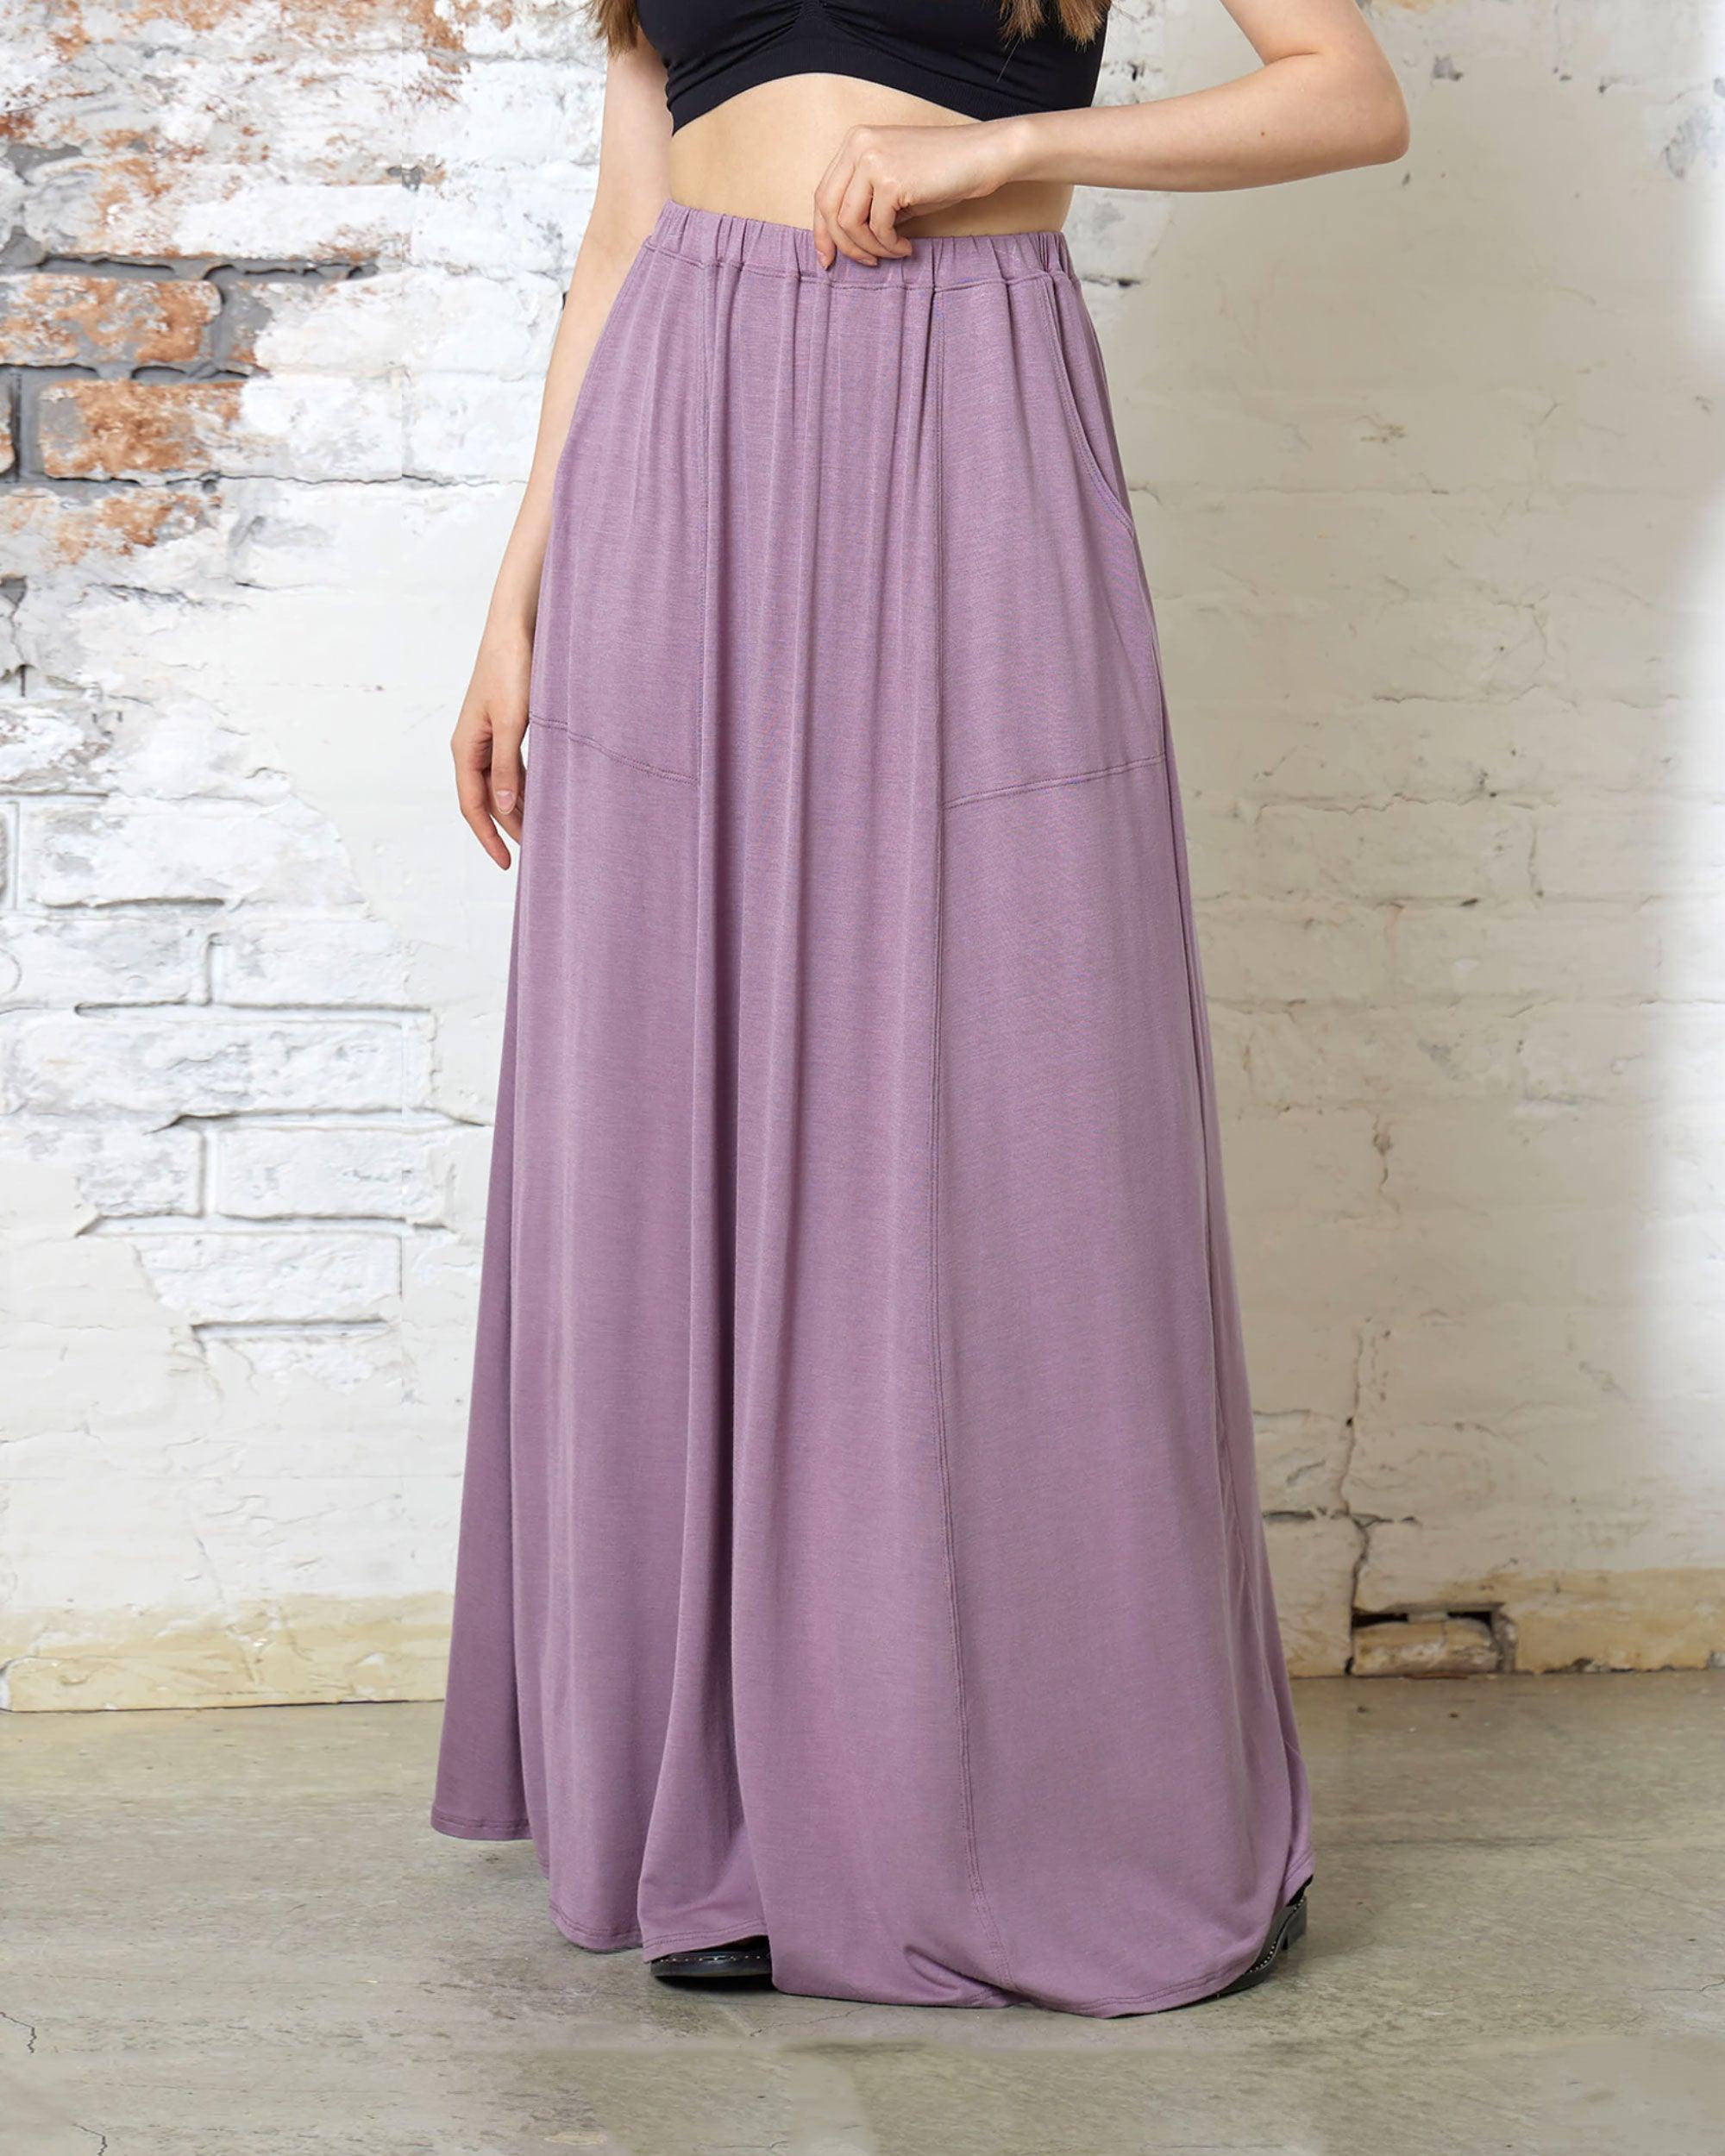 Raisin Maxi Skirt - Soft & Lightweight Design